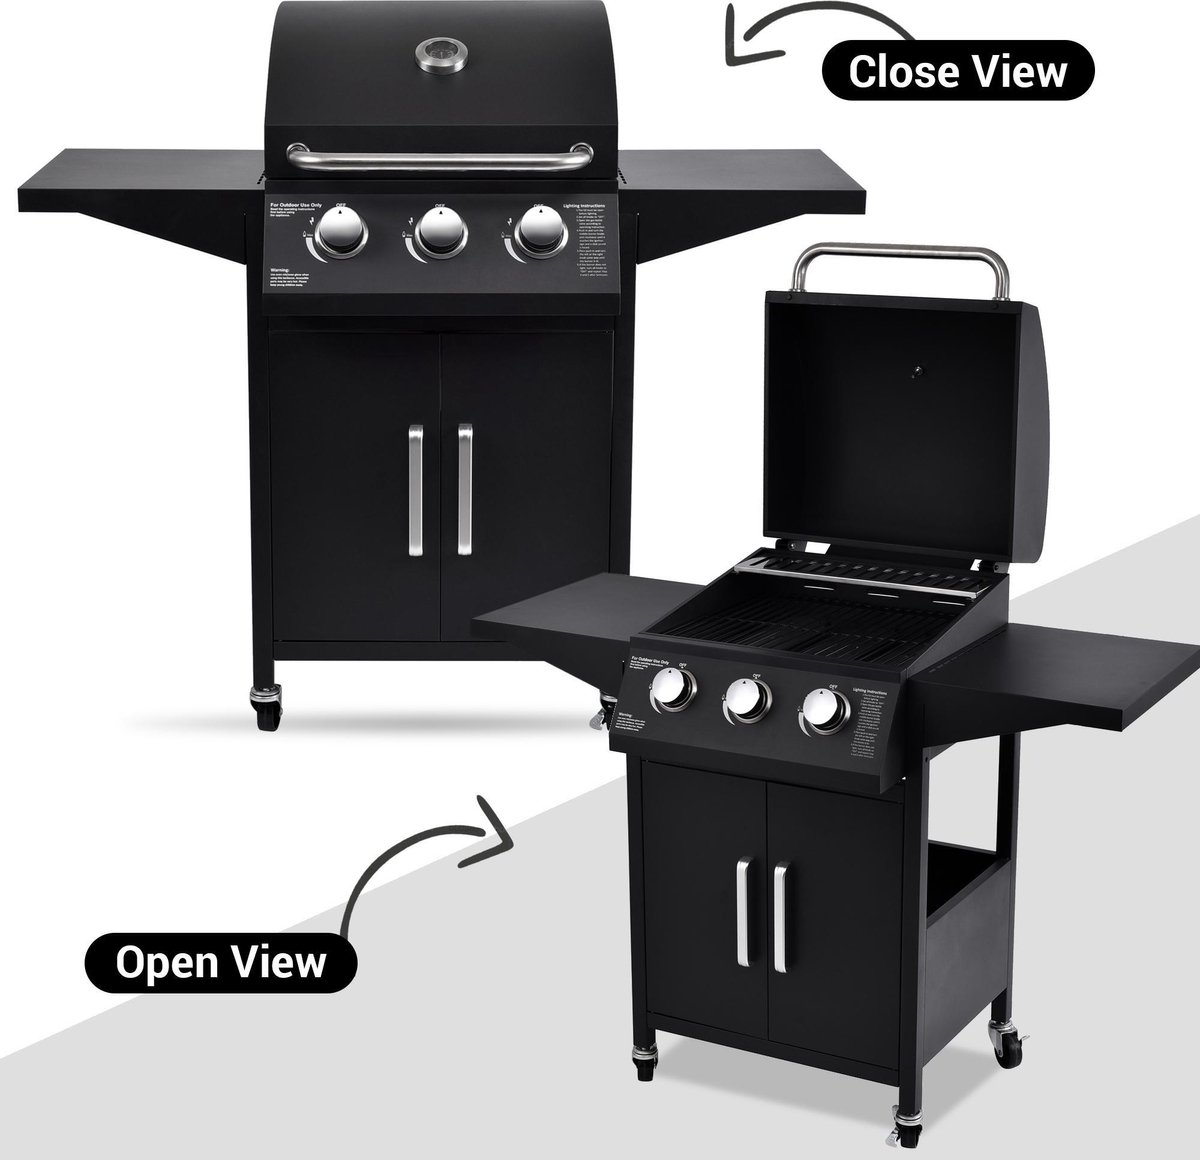 nogmaals samenzwering Respectievelijk MaxxGarden Gasbarbecue - 3 Branders - Incl. GRATIS BBQ Set - maxxtools.be